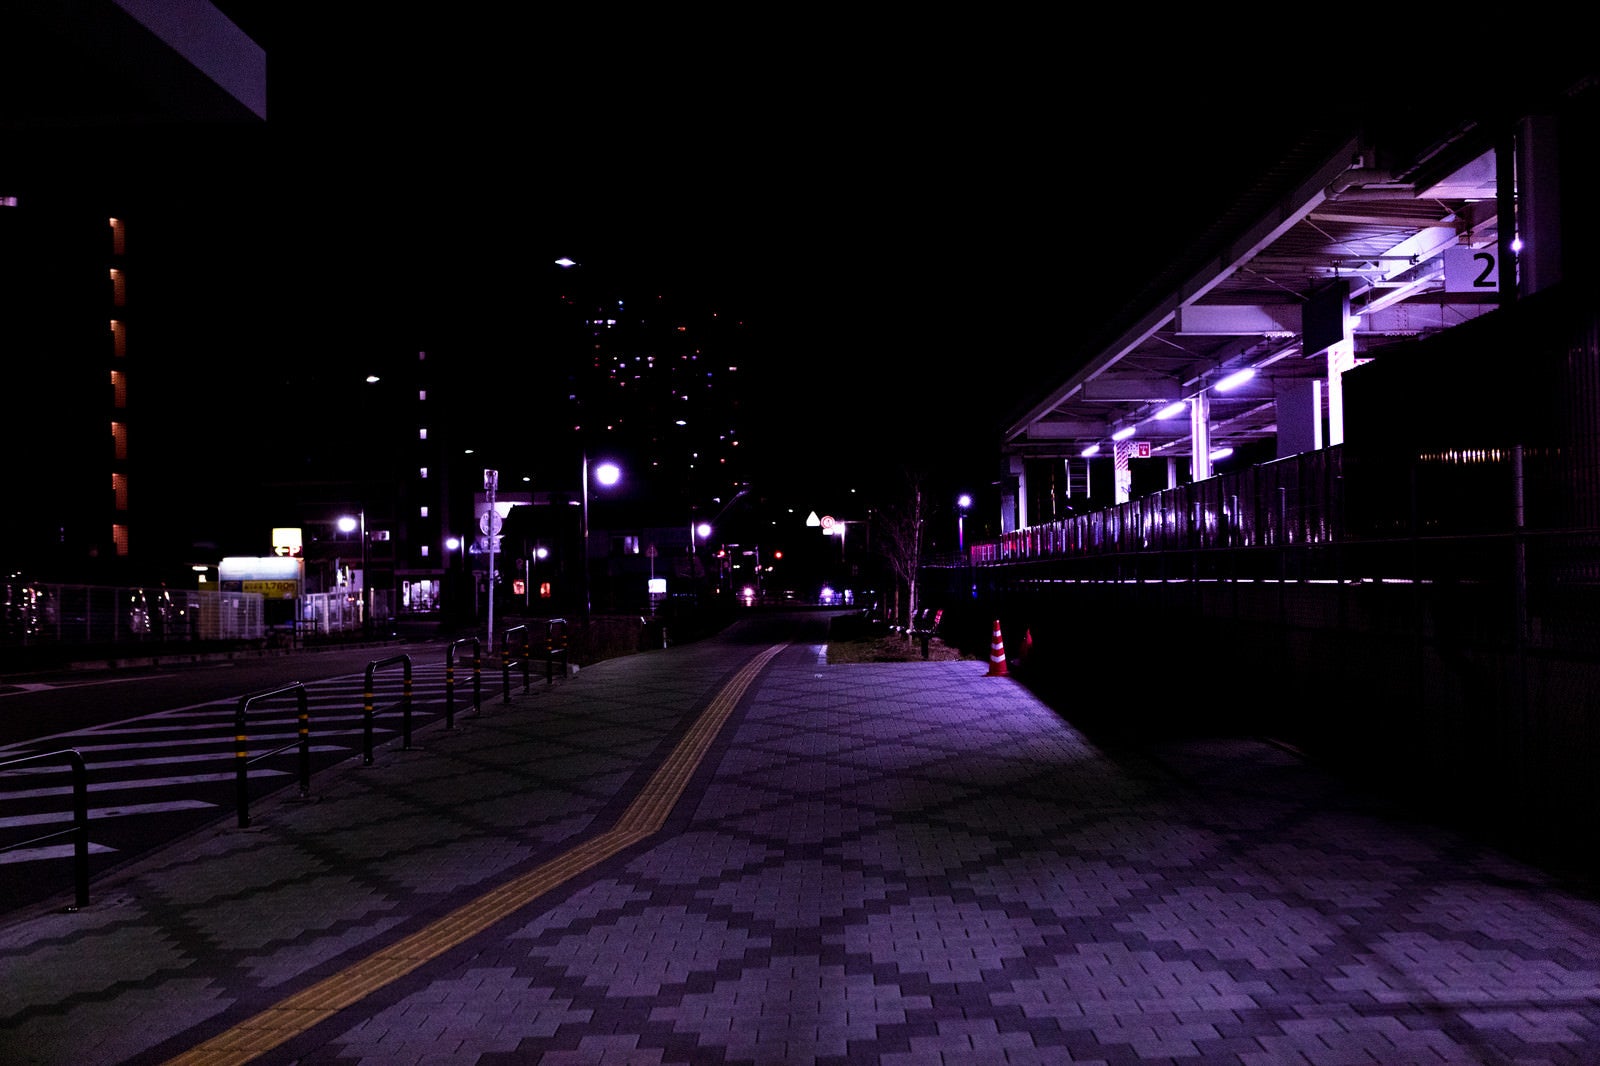 「誰もいない深夜の駅前の歩道」の写真